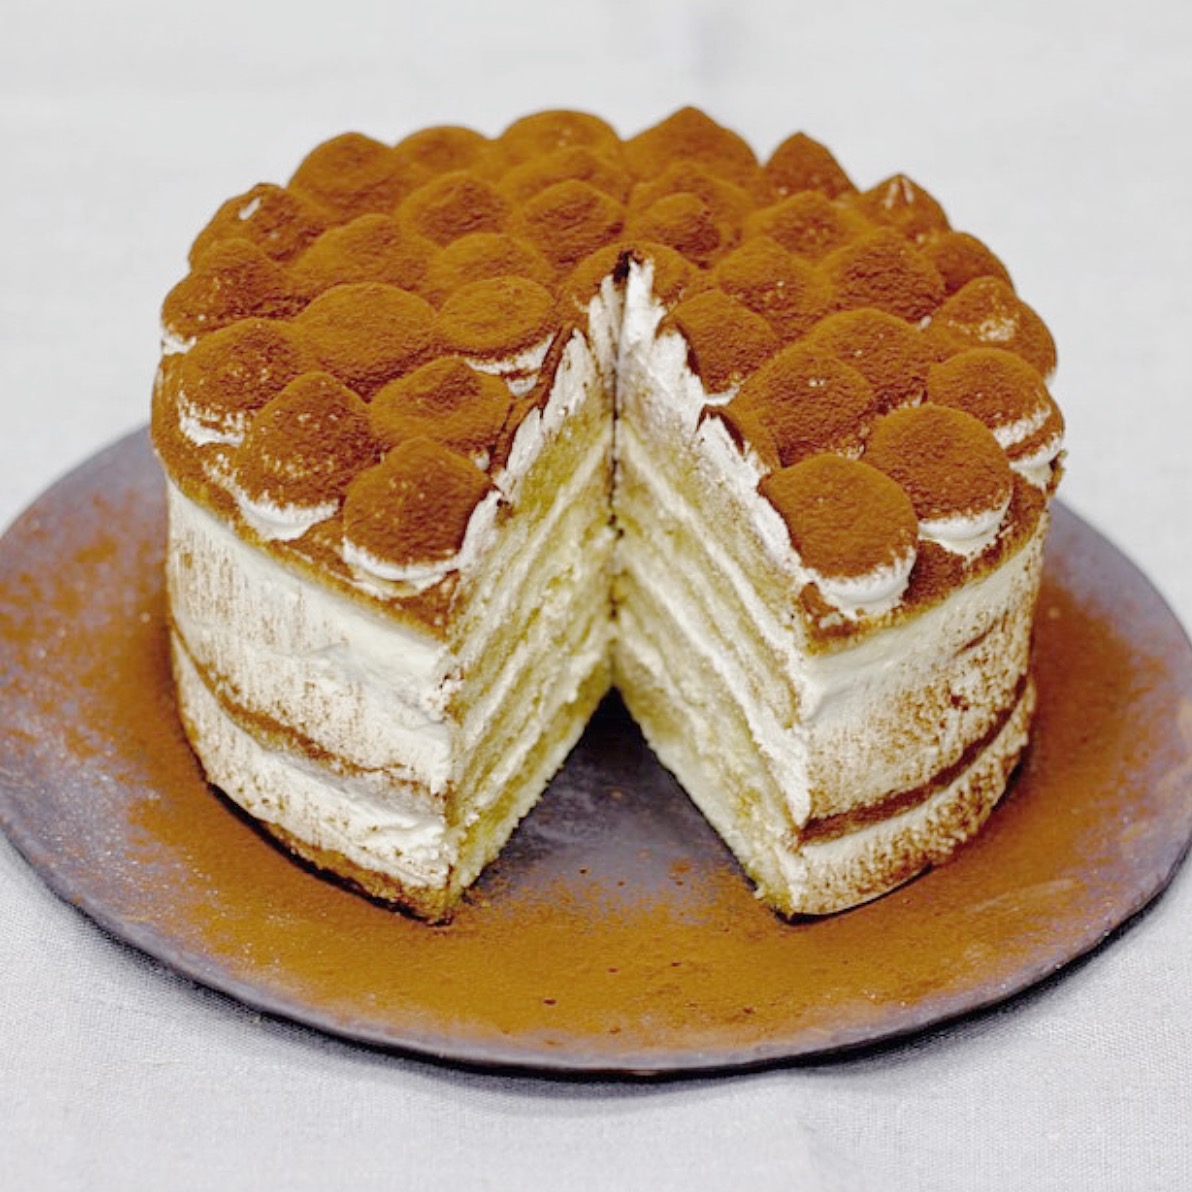 cakes categories  tiramisu cakes description  baking tiramisu  buttercream cake tags birthday cake